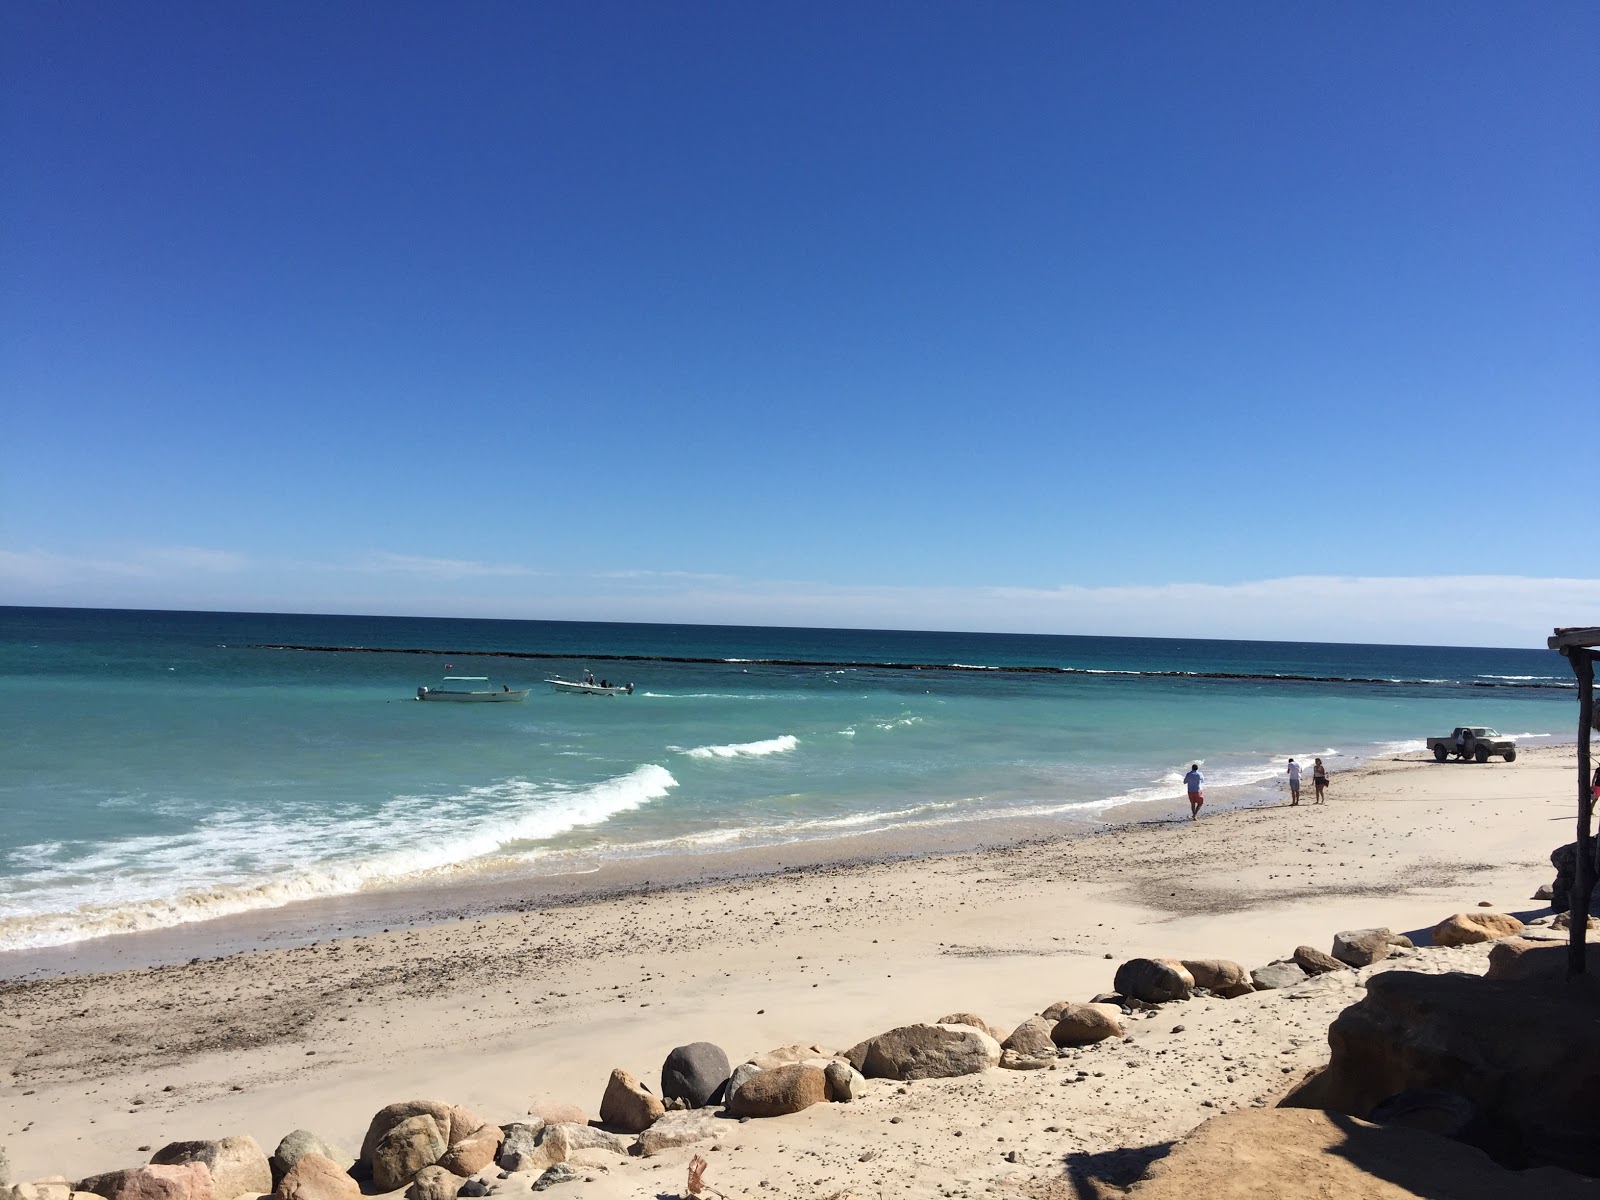 Arbolito Beach II'in fotoğrafı geniş plaj ile birlikte